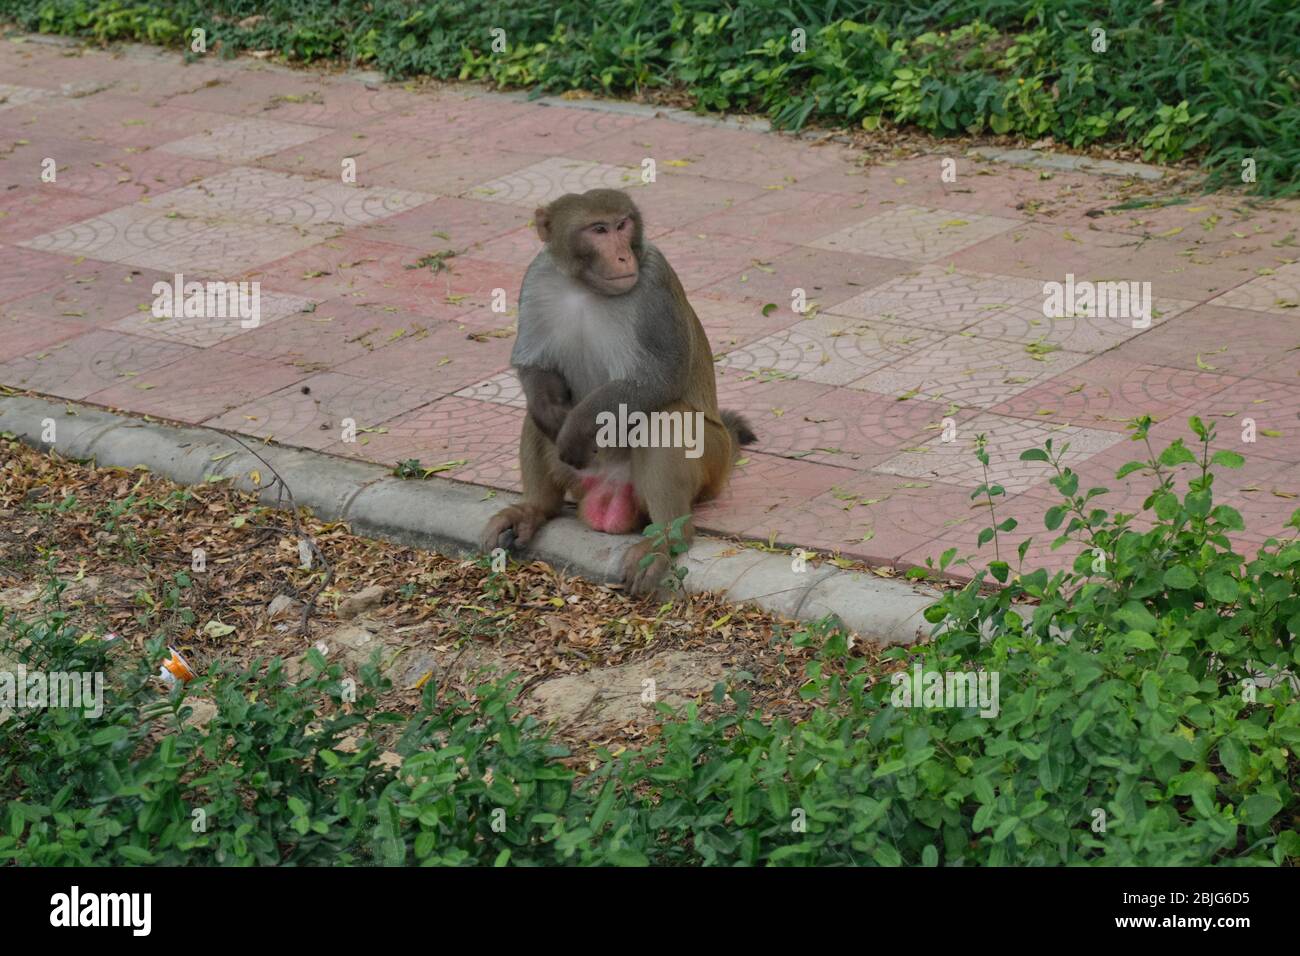 Rhesus macaque, Macaca mulatta, wilder Affe auf der Straße in Neu Delhi, Indien Stockfoto